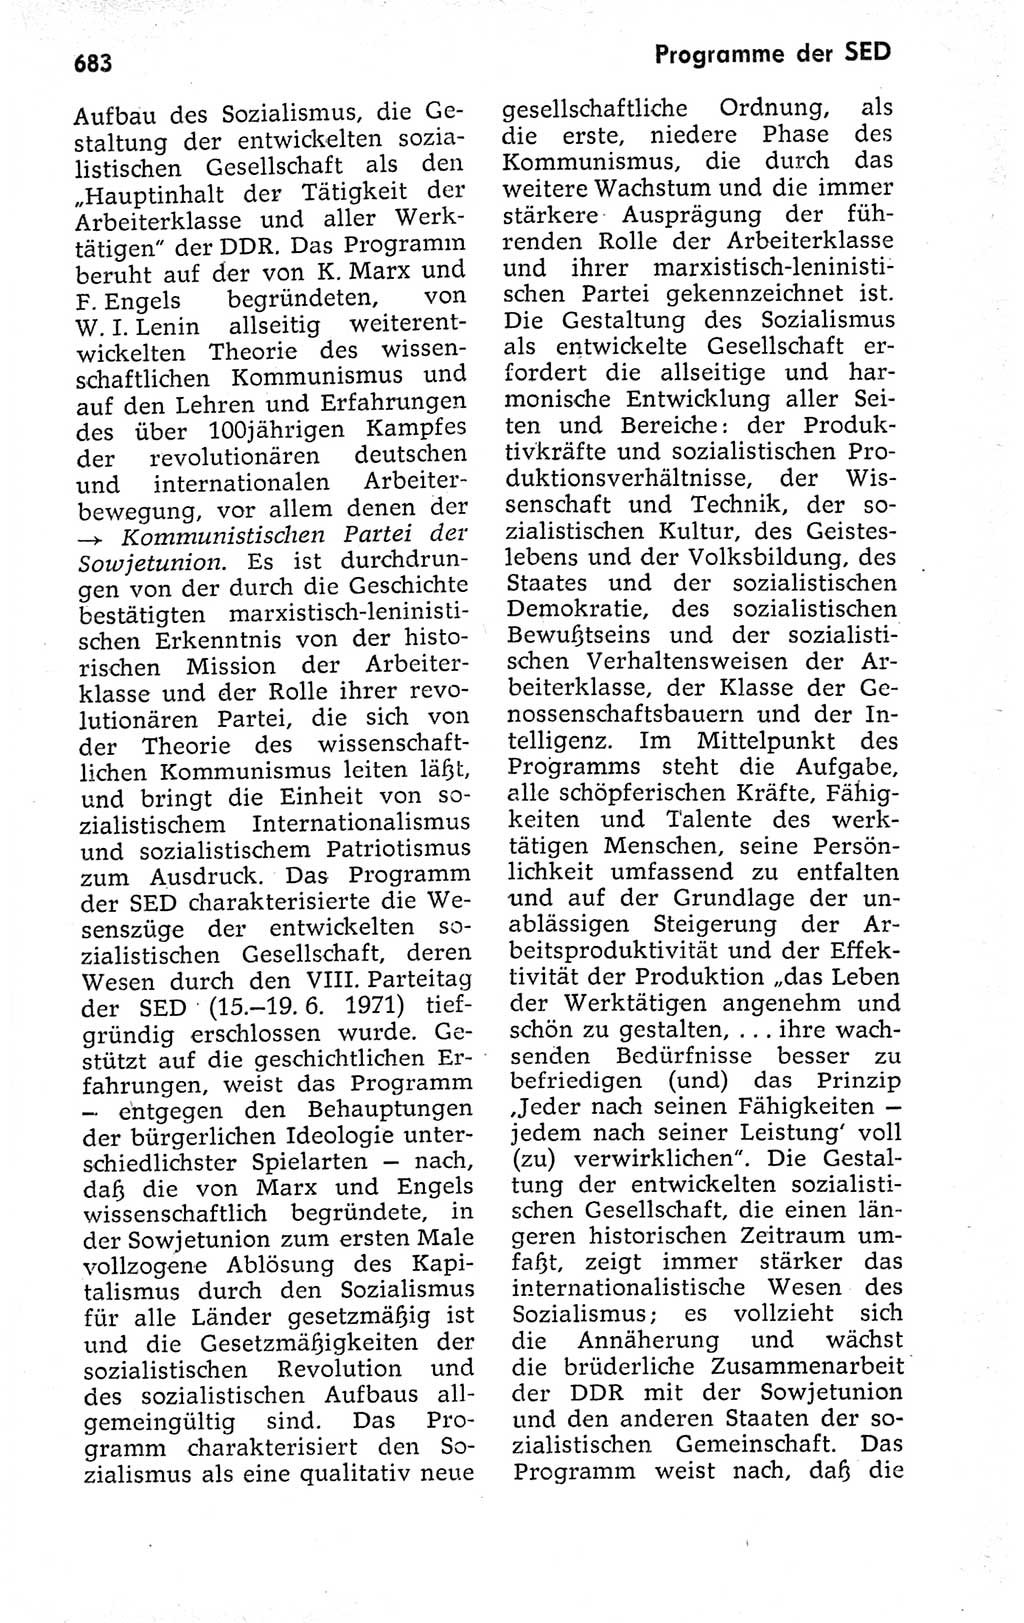 Kleines politisches Wörterbuch [Deutsche Demokratische Republik (DDR)] 1973, Seite 683 (Kl. pol. Wb. DDR 1973, S. 683)